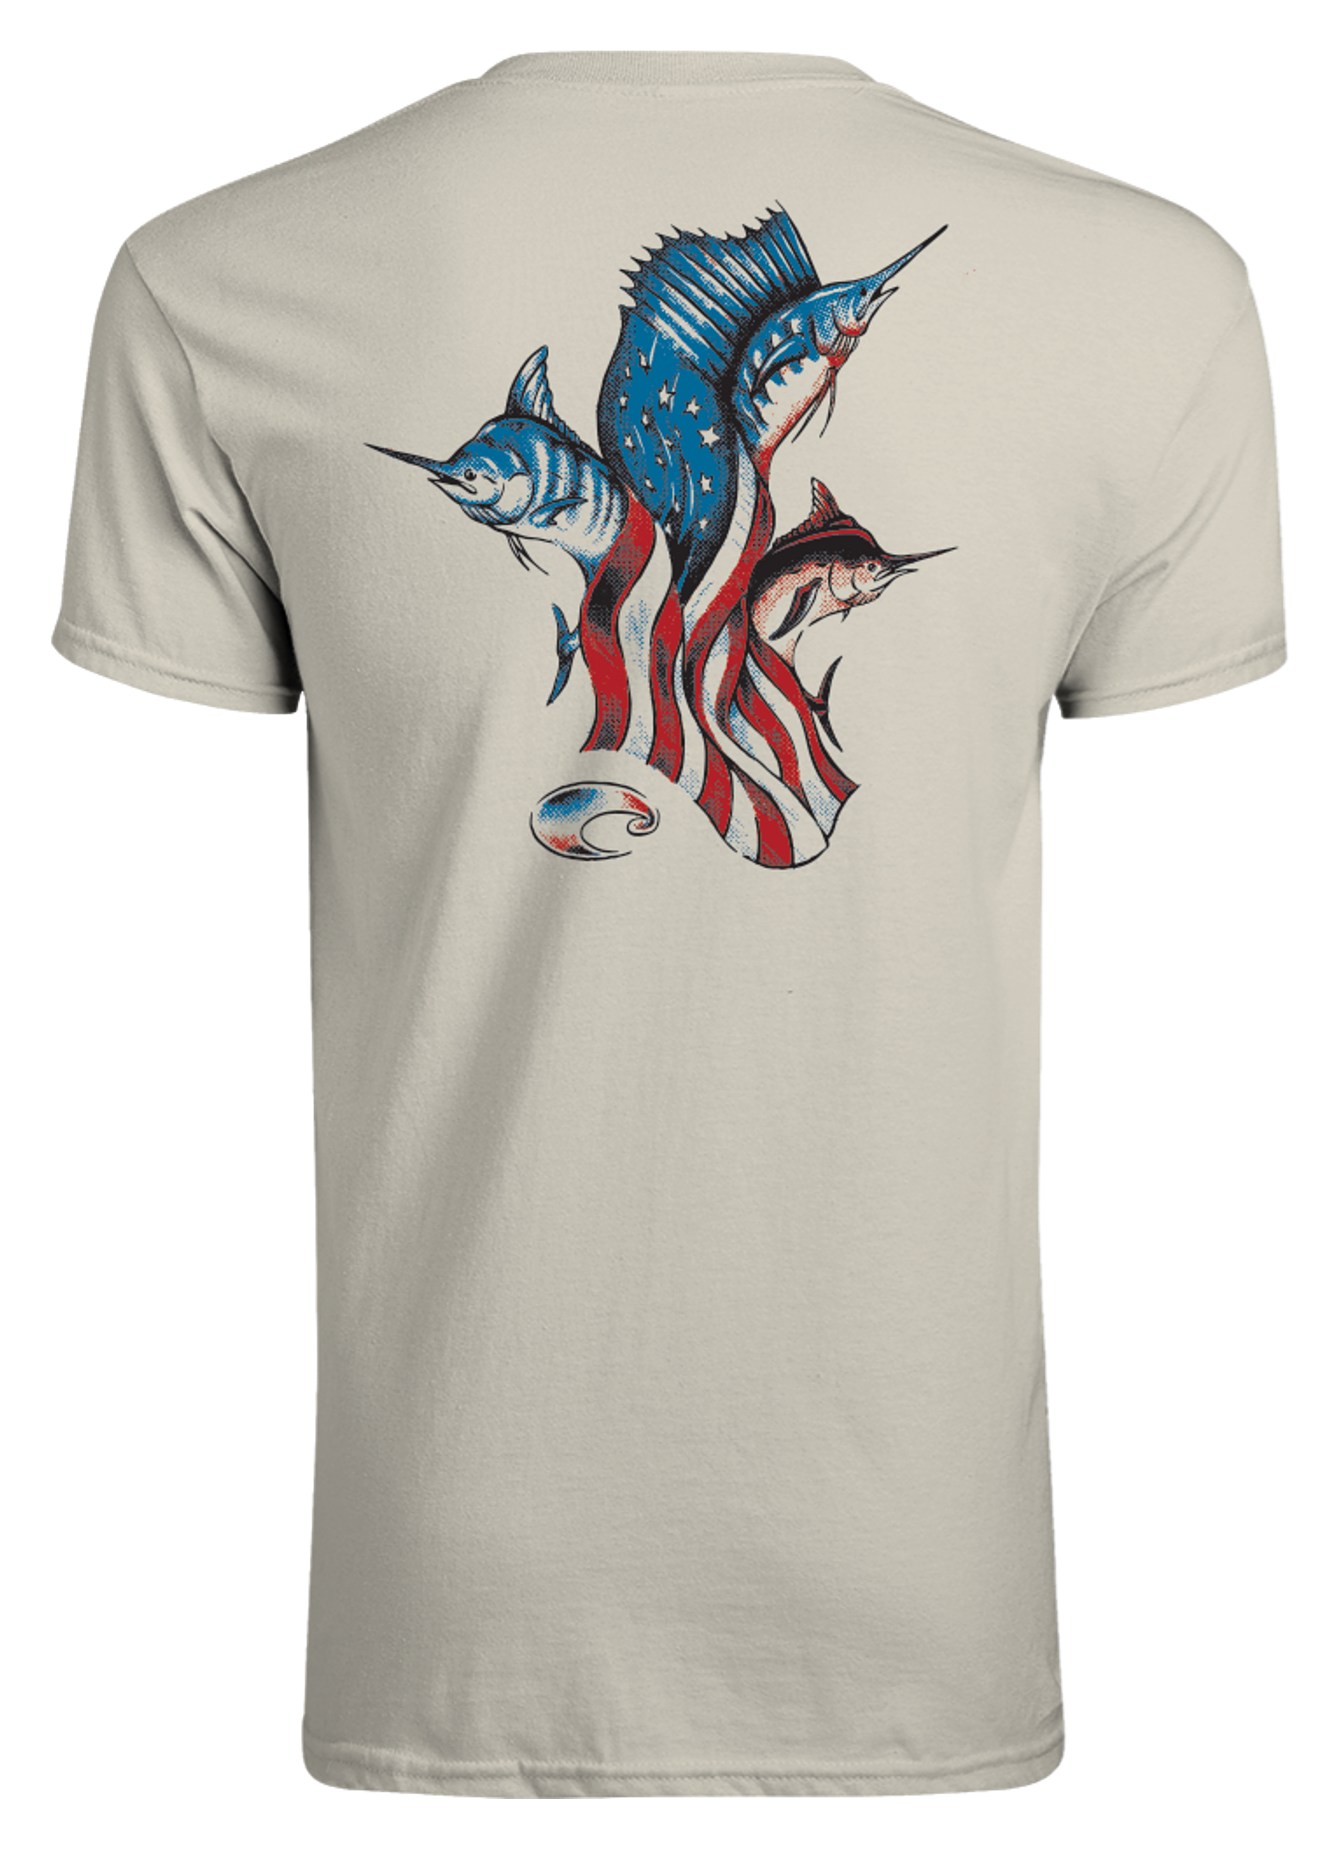 Costa Del Mar Bill Fish USA Short-Sleeve T-Shirt for Men